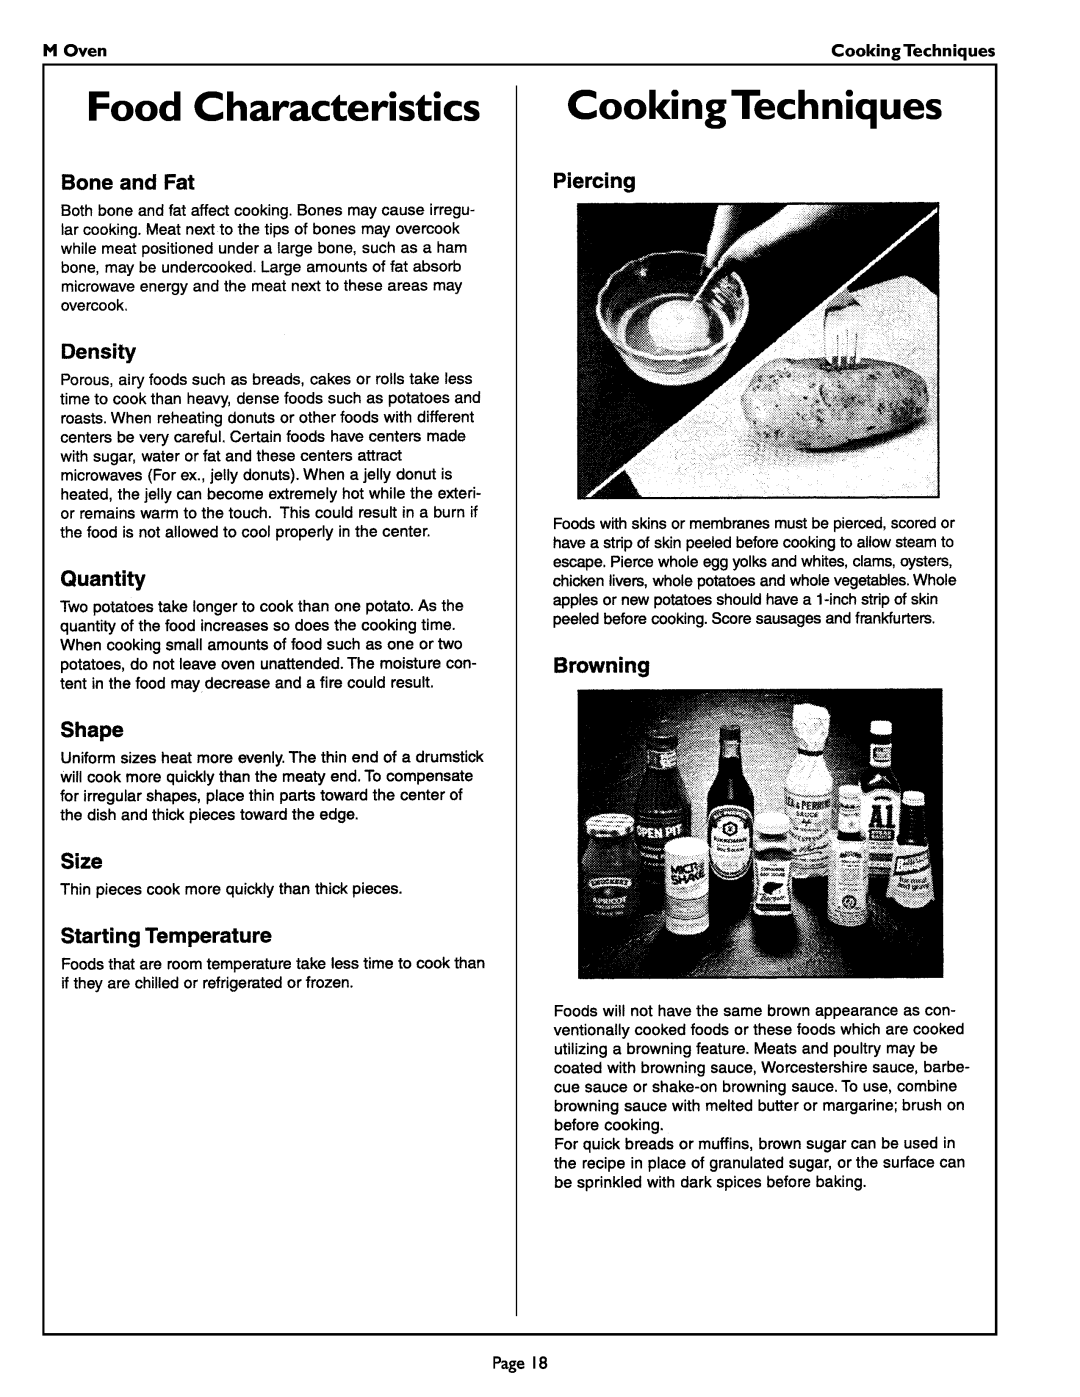 Thermador MT27 manual Food Characteristics, CookingTechniques, M Oven, Cooking Techniques 